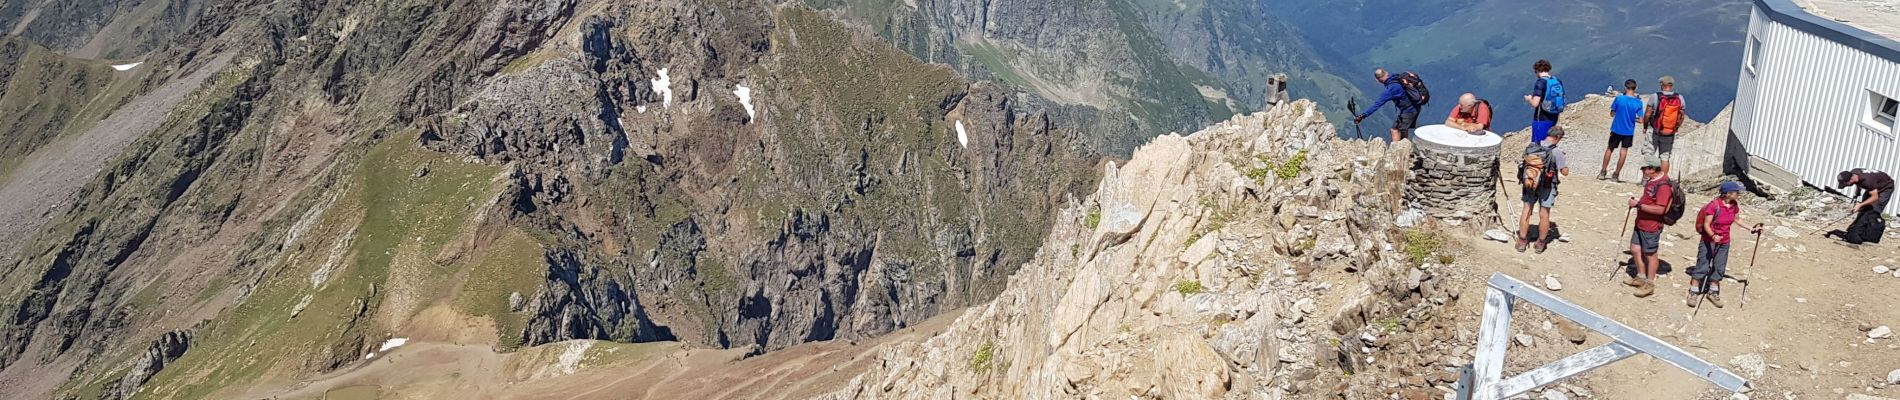 Trail Walking Sers - départ du tourmalet jusqu'au pic du midi de Bigorre  - Photo